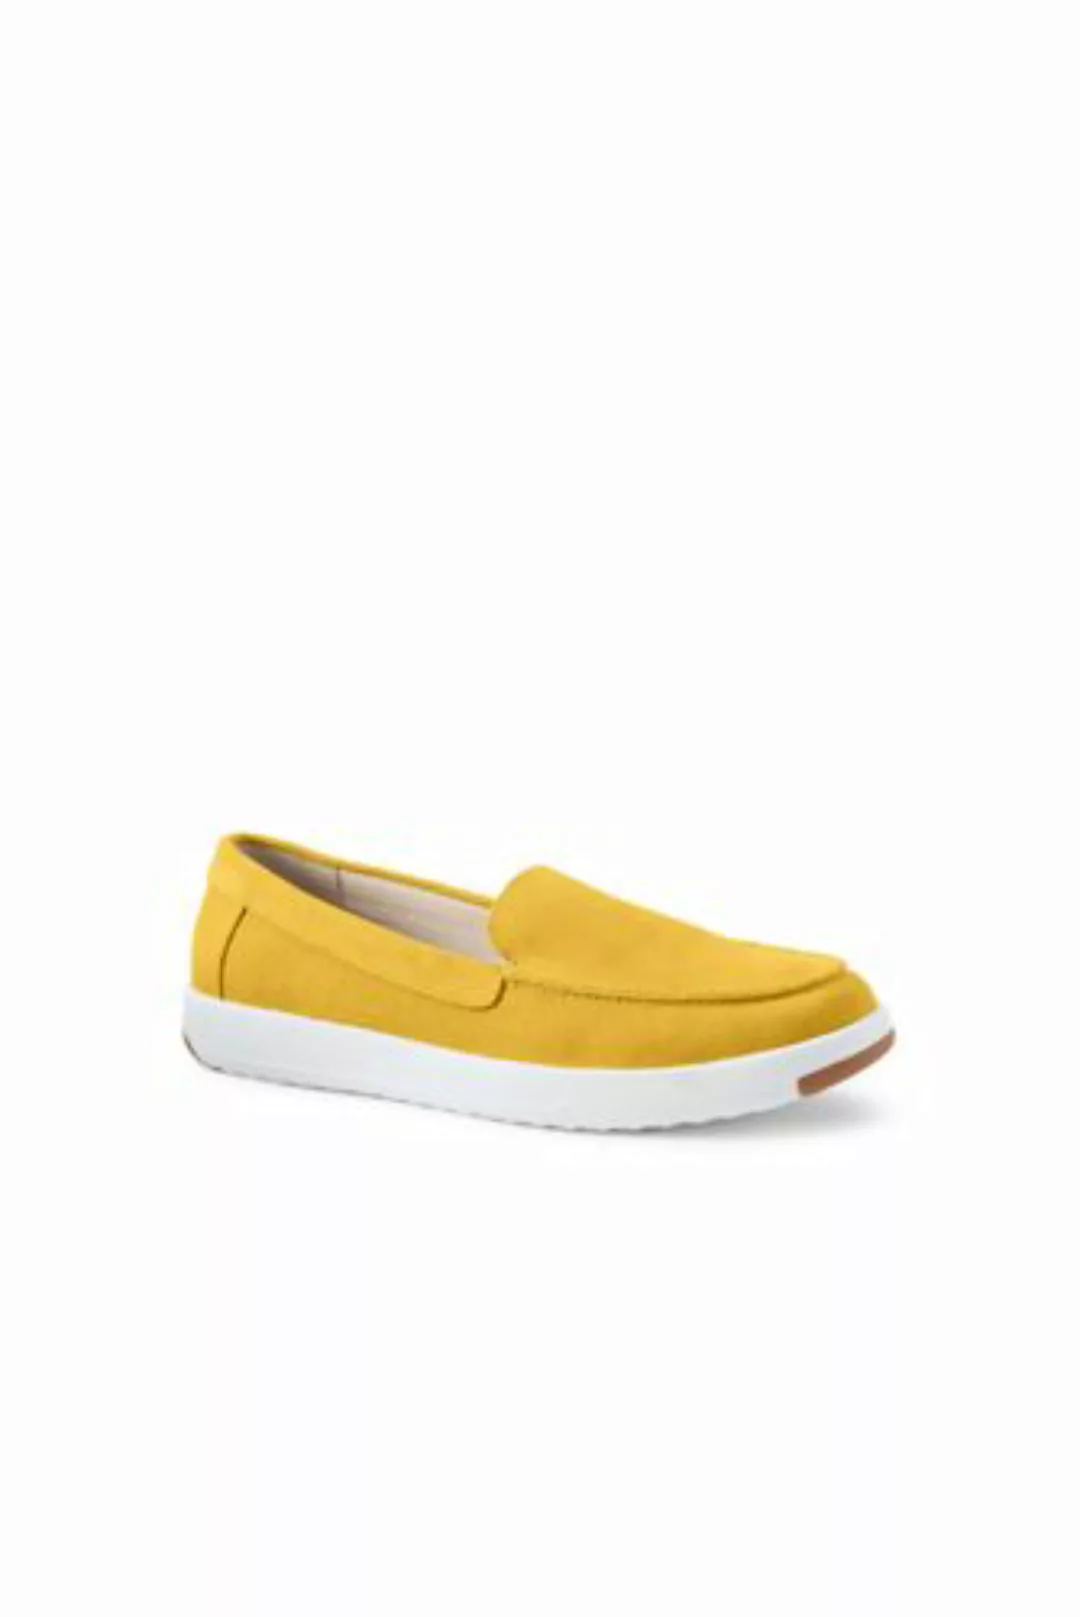 Federleichte Komfort-Loafer, Damen, Größe: 41 Normal, Gelb, Rauleder, by La günstig online kaufen